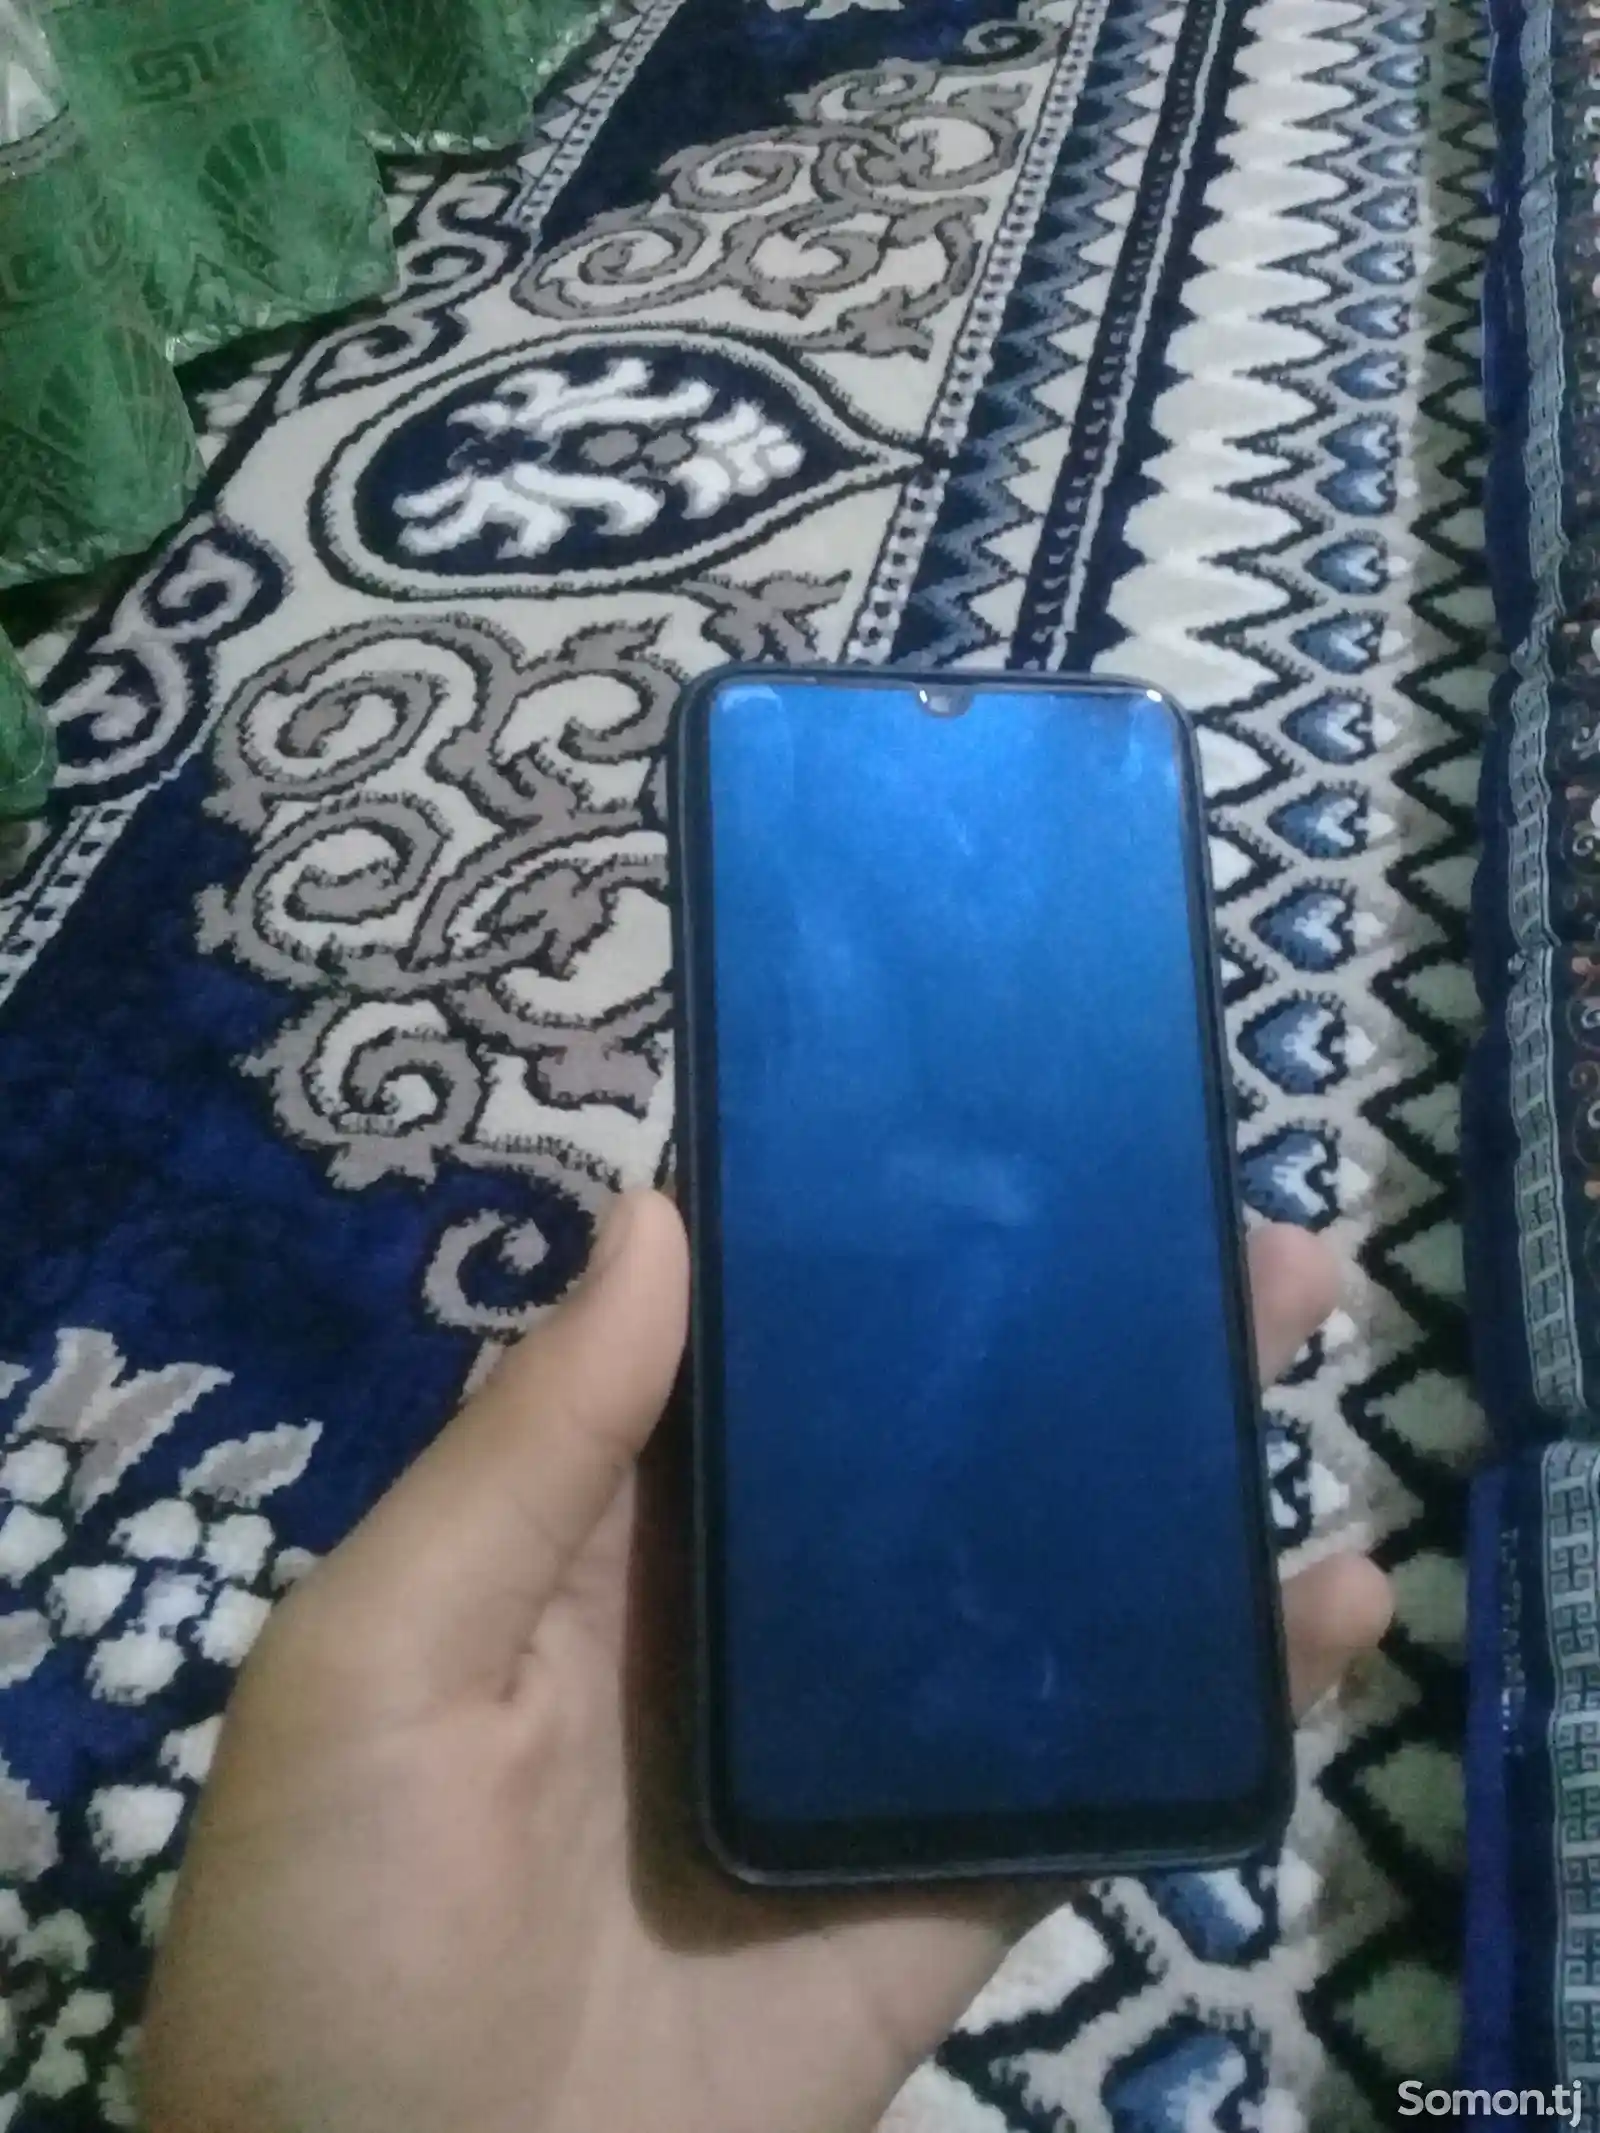 Samsung Galaxy A20-2